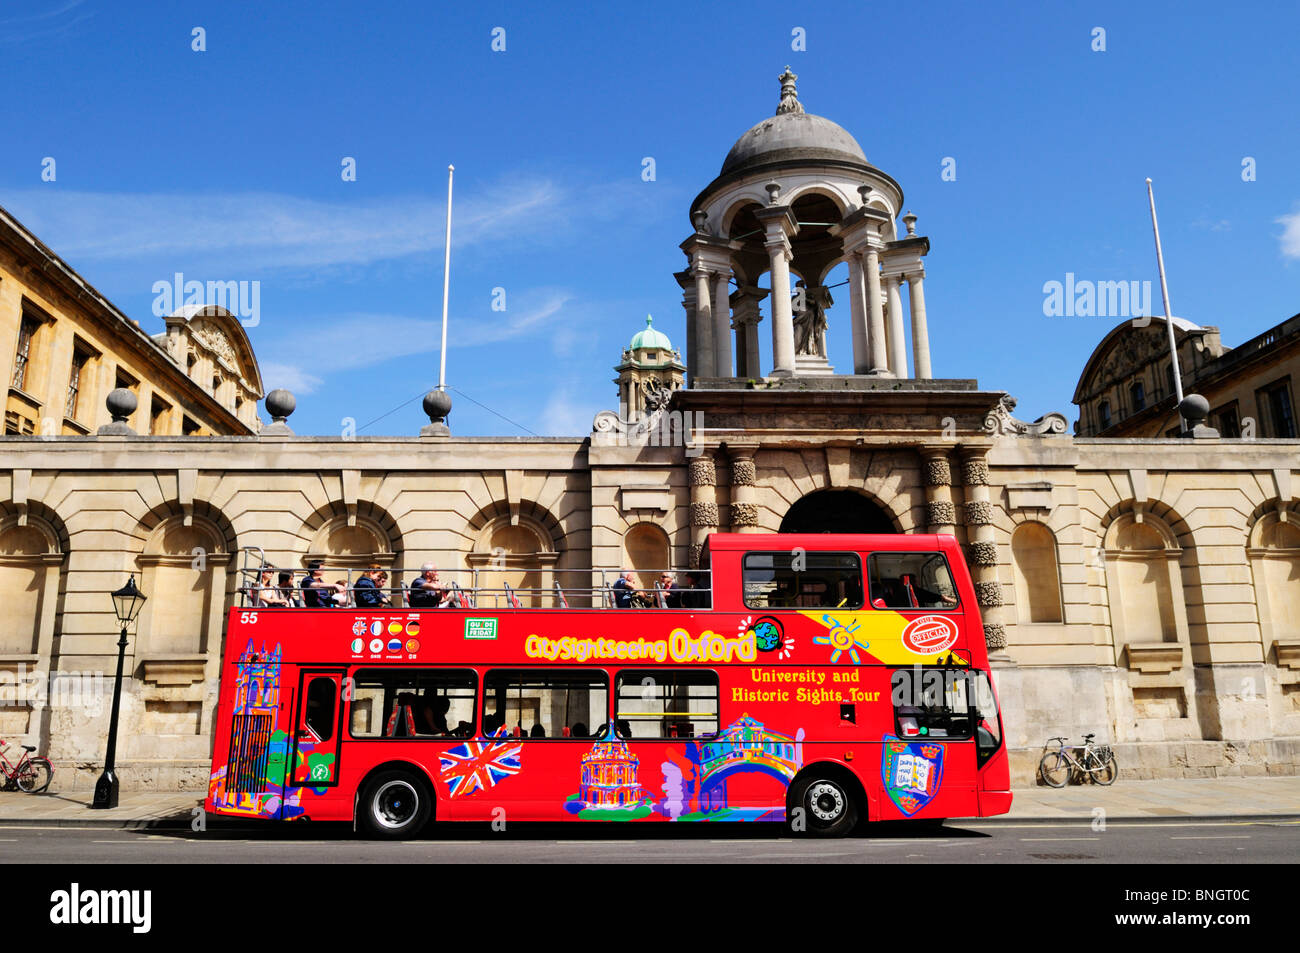 City sightseeing bus touristique à l'extérieur du Queens College, Oxford, England, UK Banque D'Images